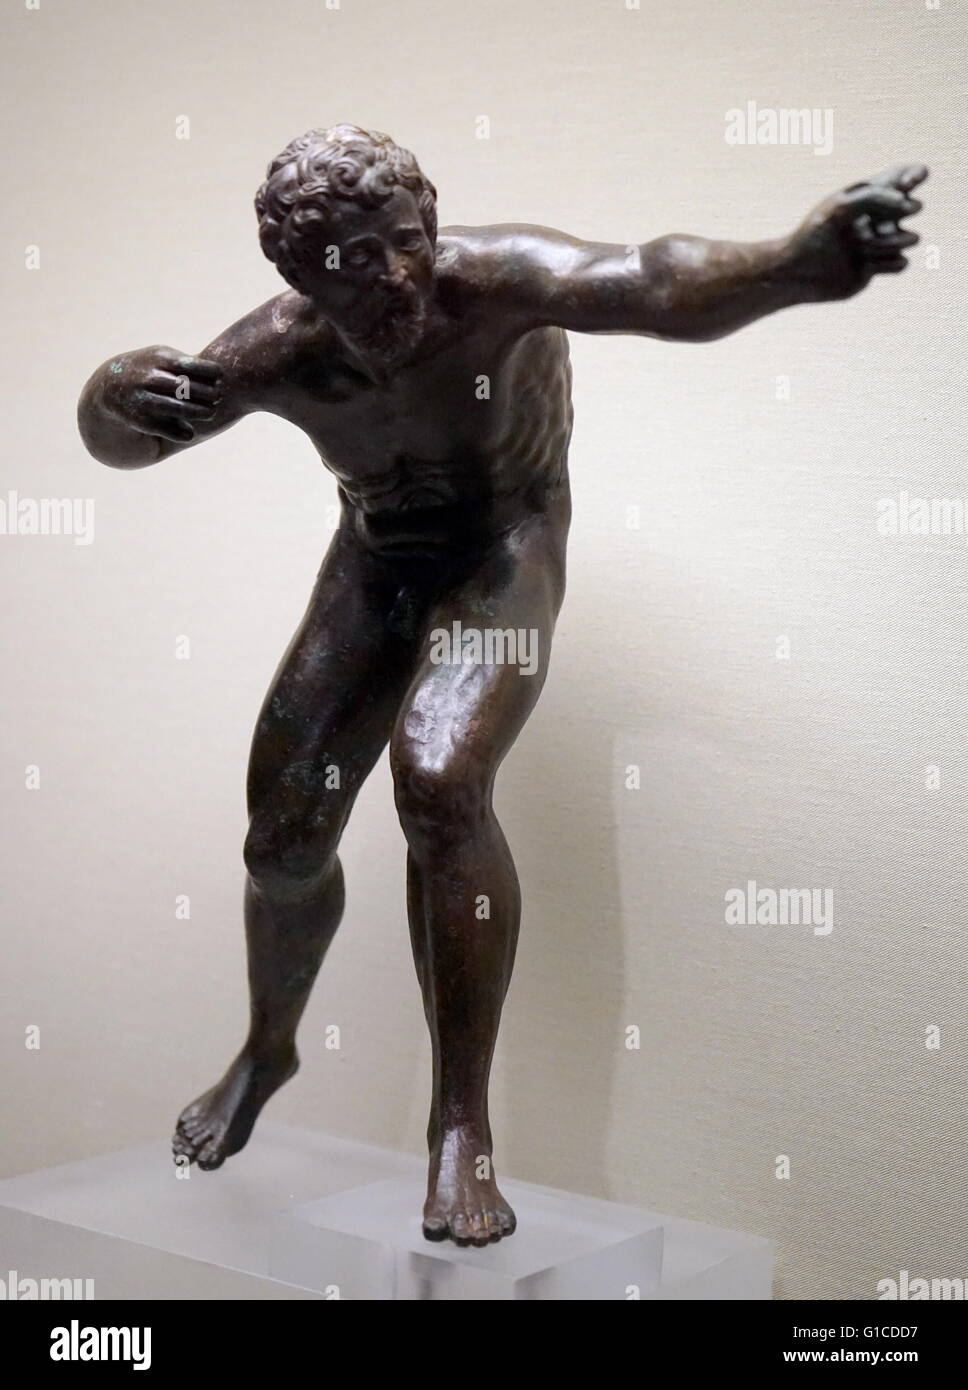 Bronzefigur eines Bogenschützen, die Herkules sein könnte. Stockfoto